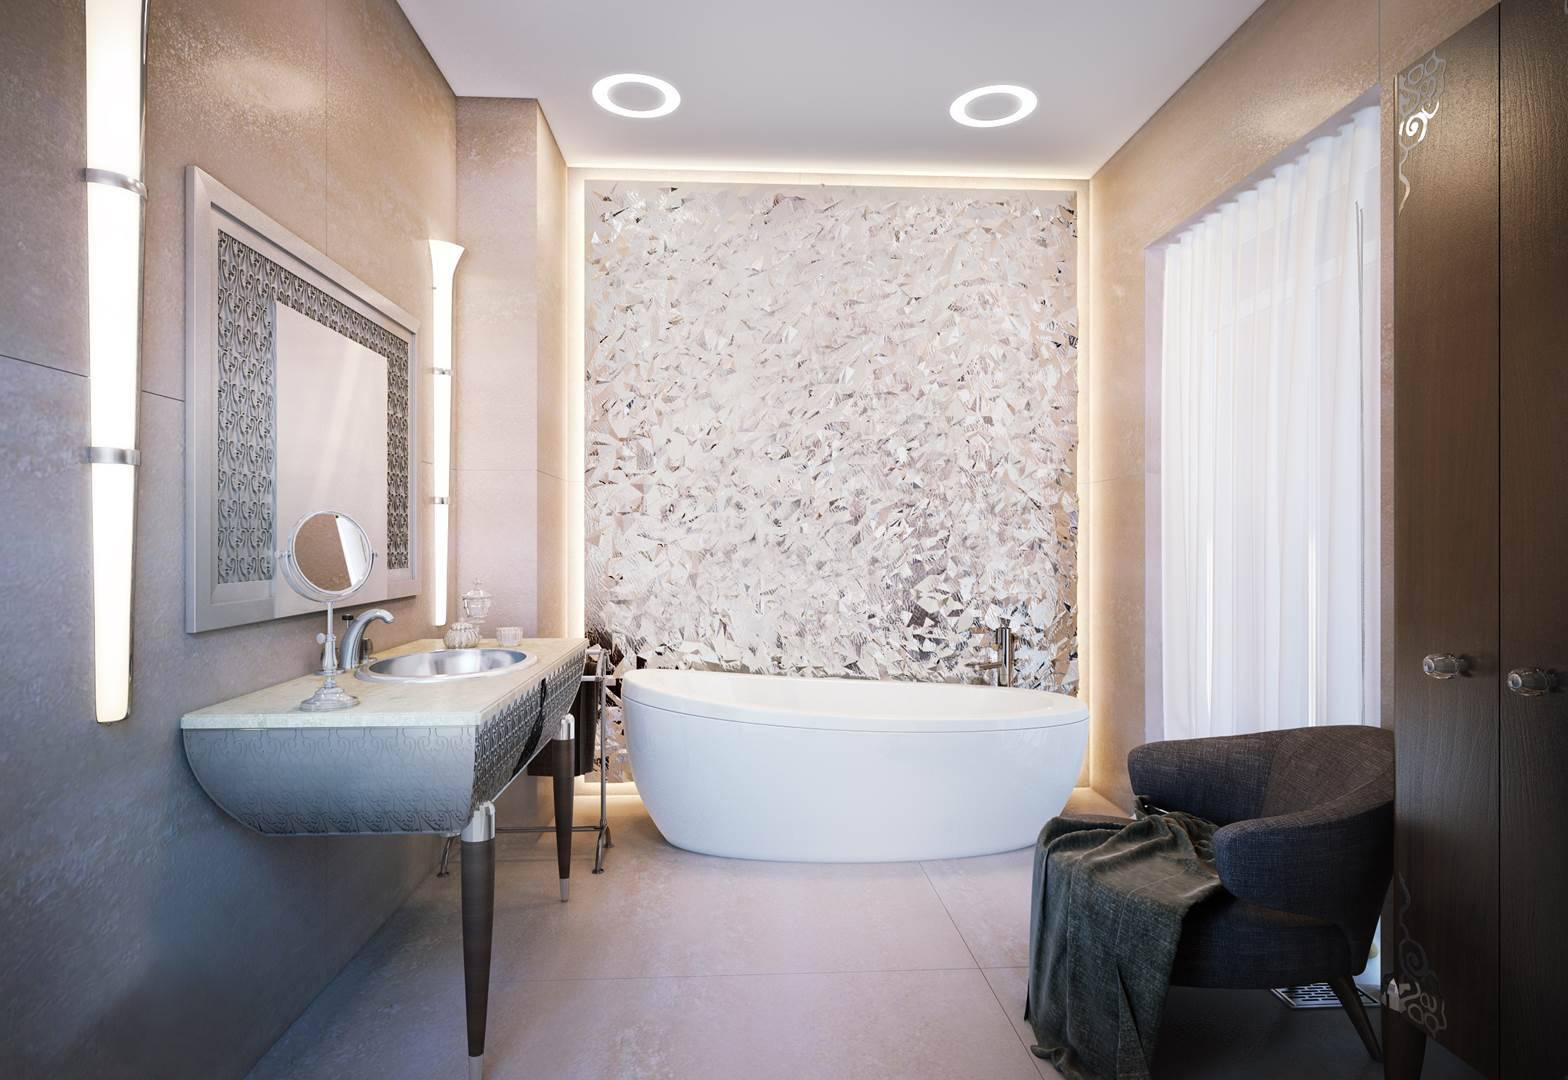 Отделка ванной комнаты декоративной штукатуркой своими руками [47 фото], какая штукатурка подходит для стен ванной: венецианская, шелковая или под покраску